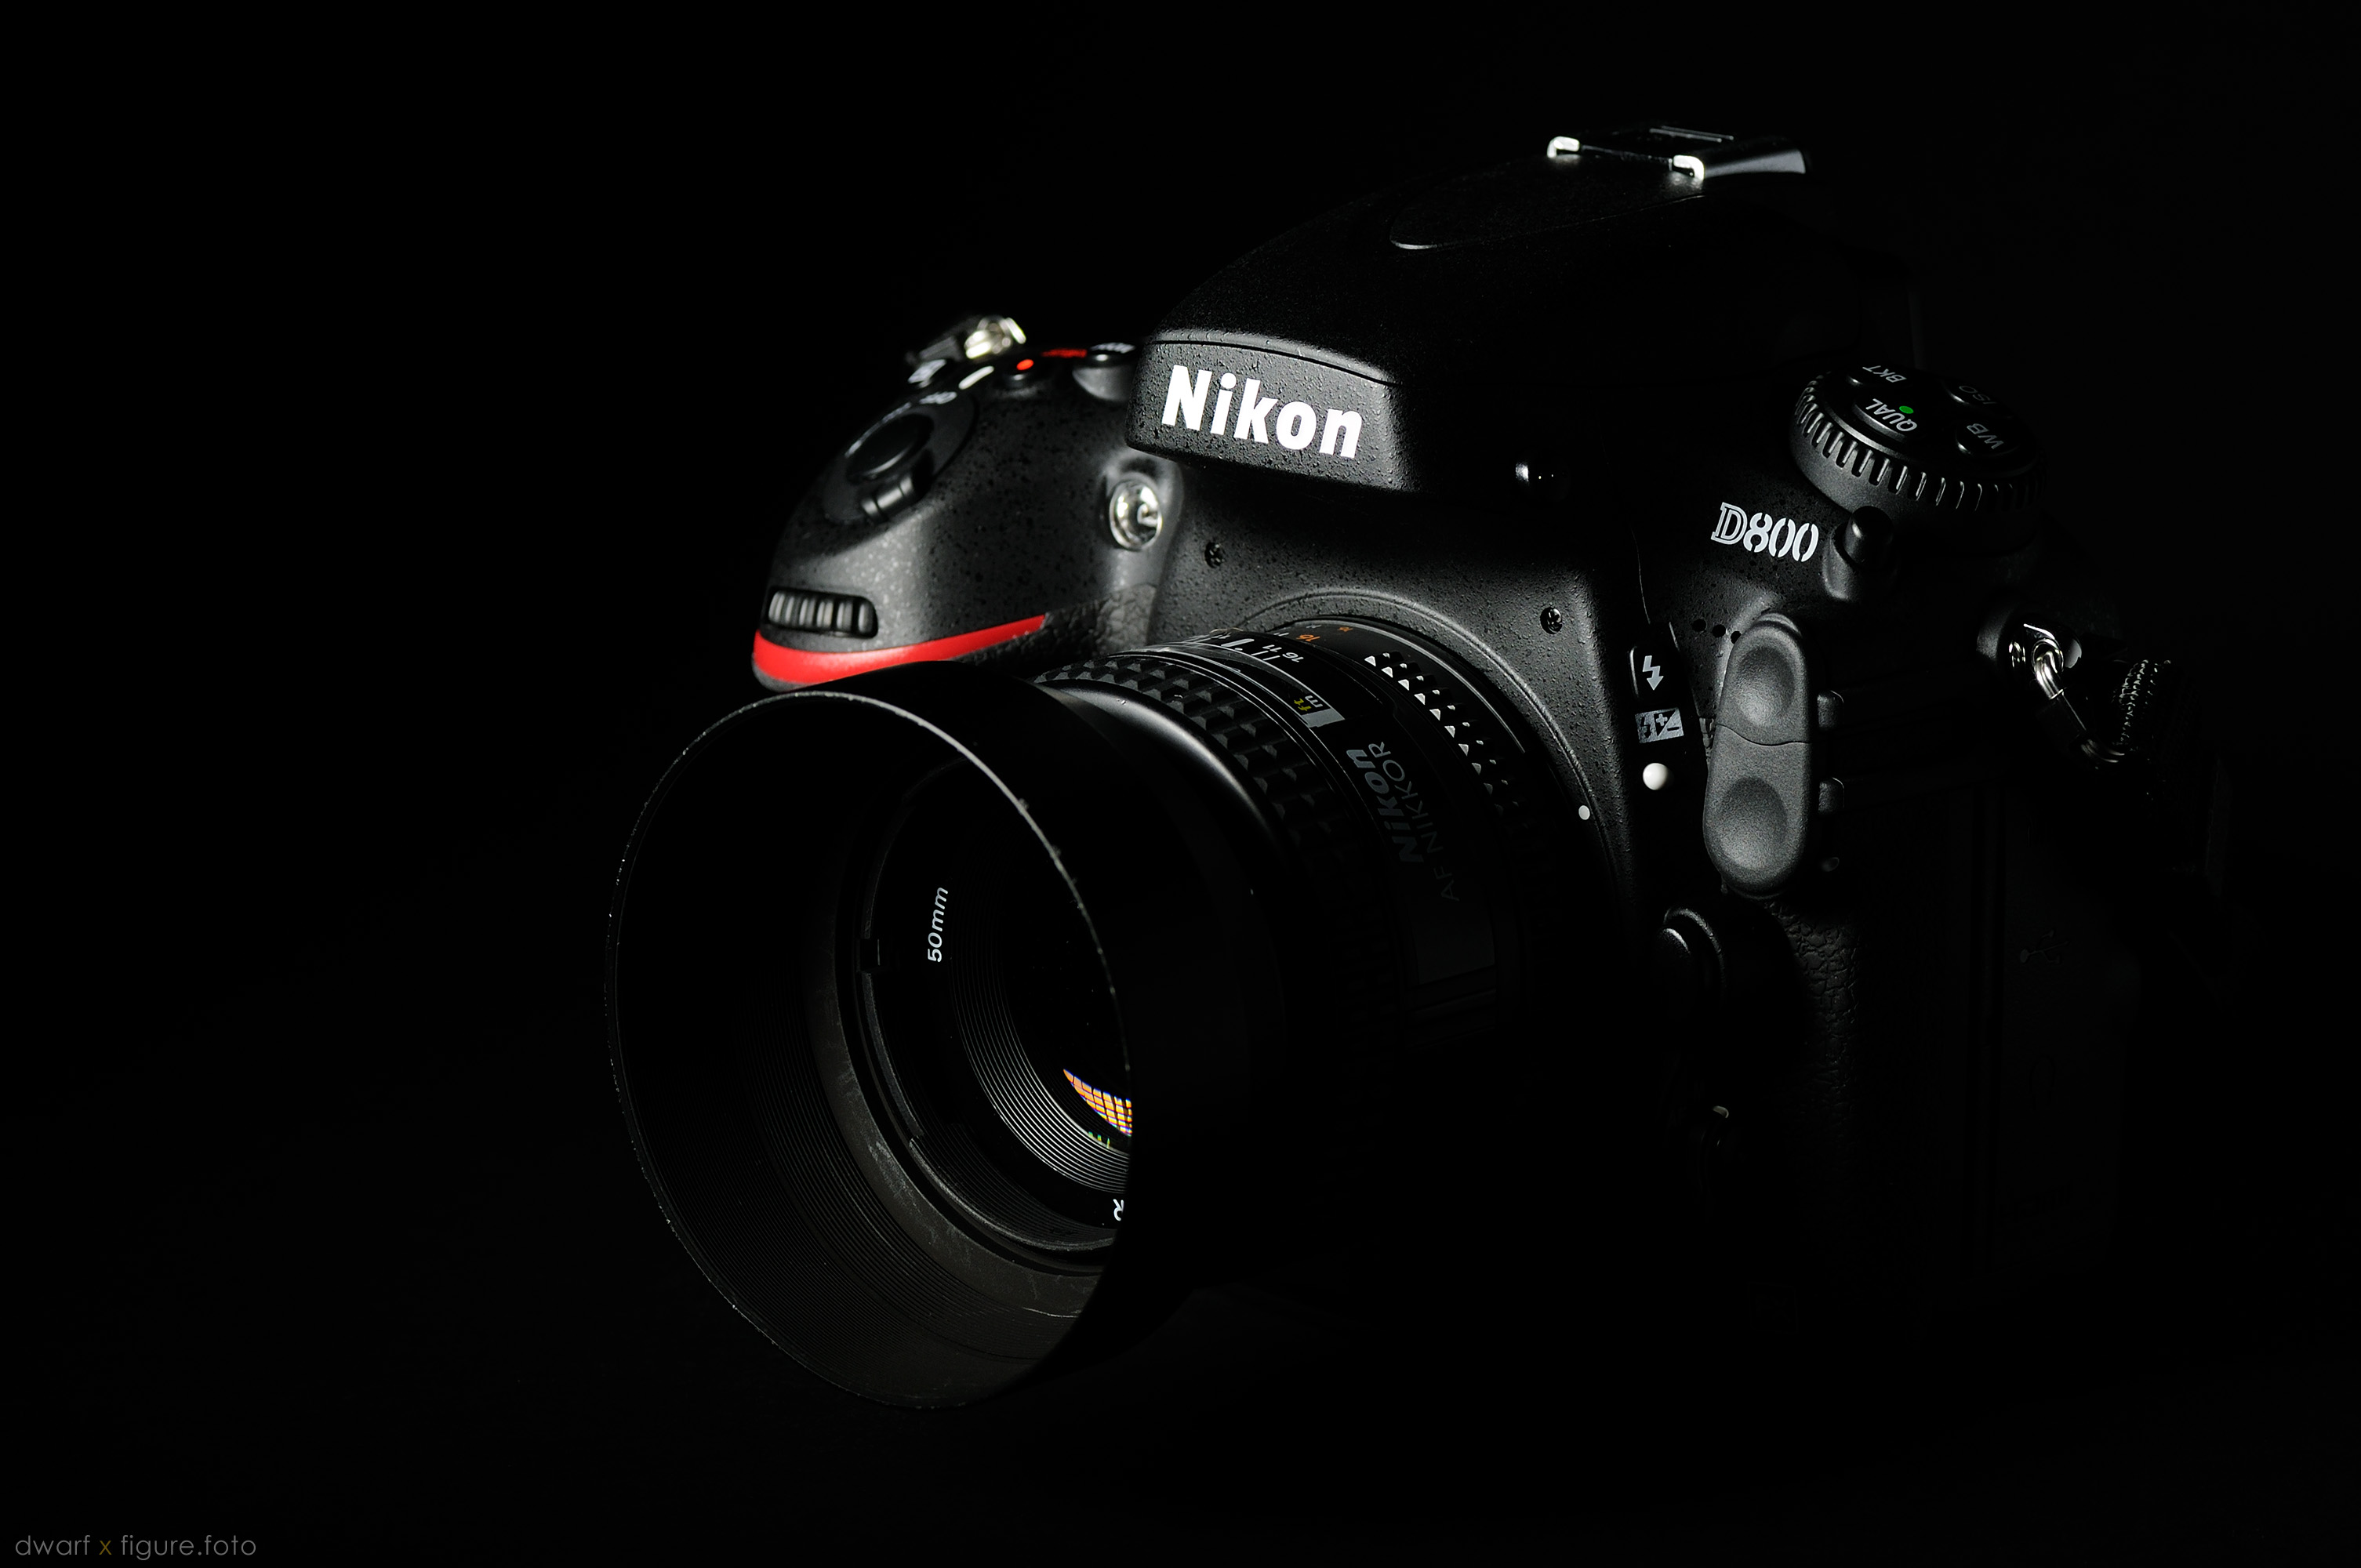 Nikon D800 - dwarf x figure.foto